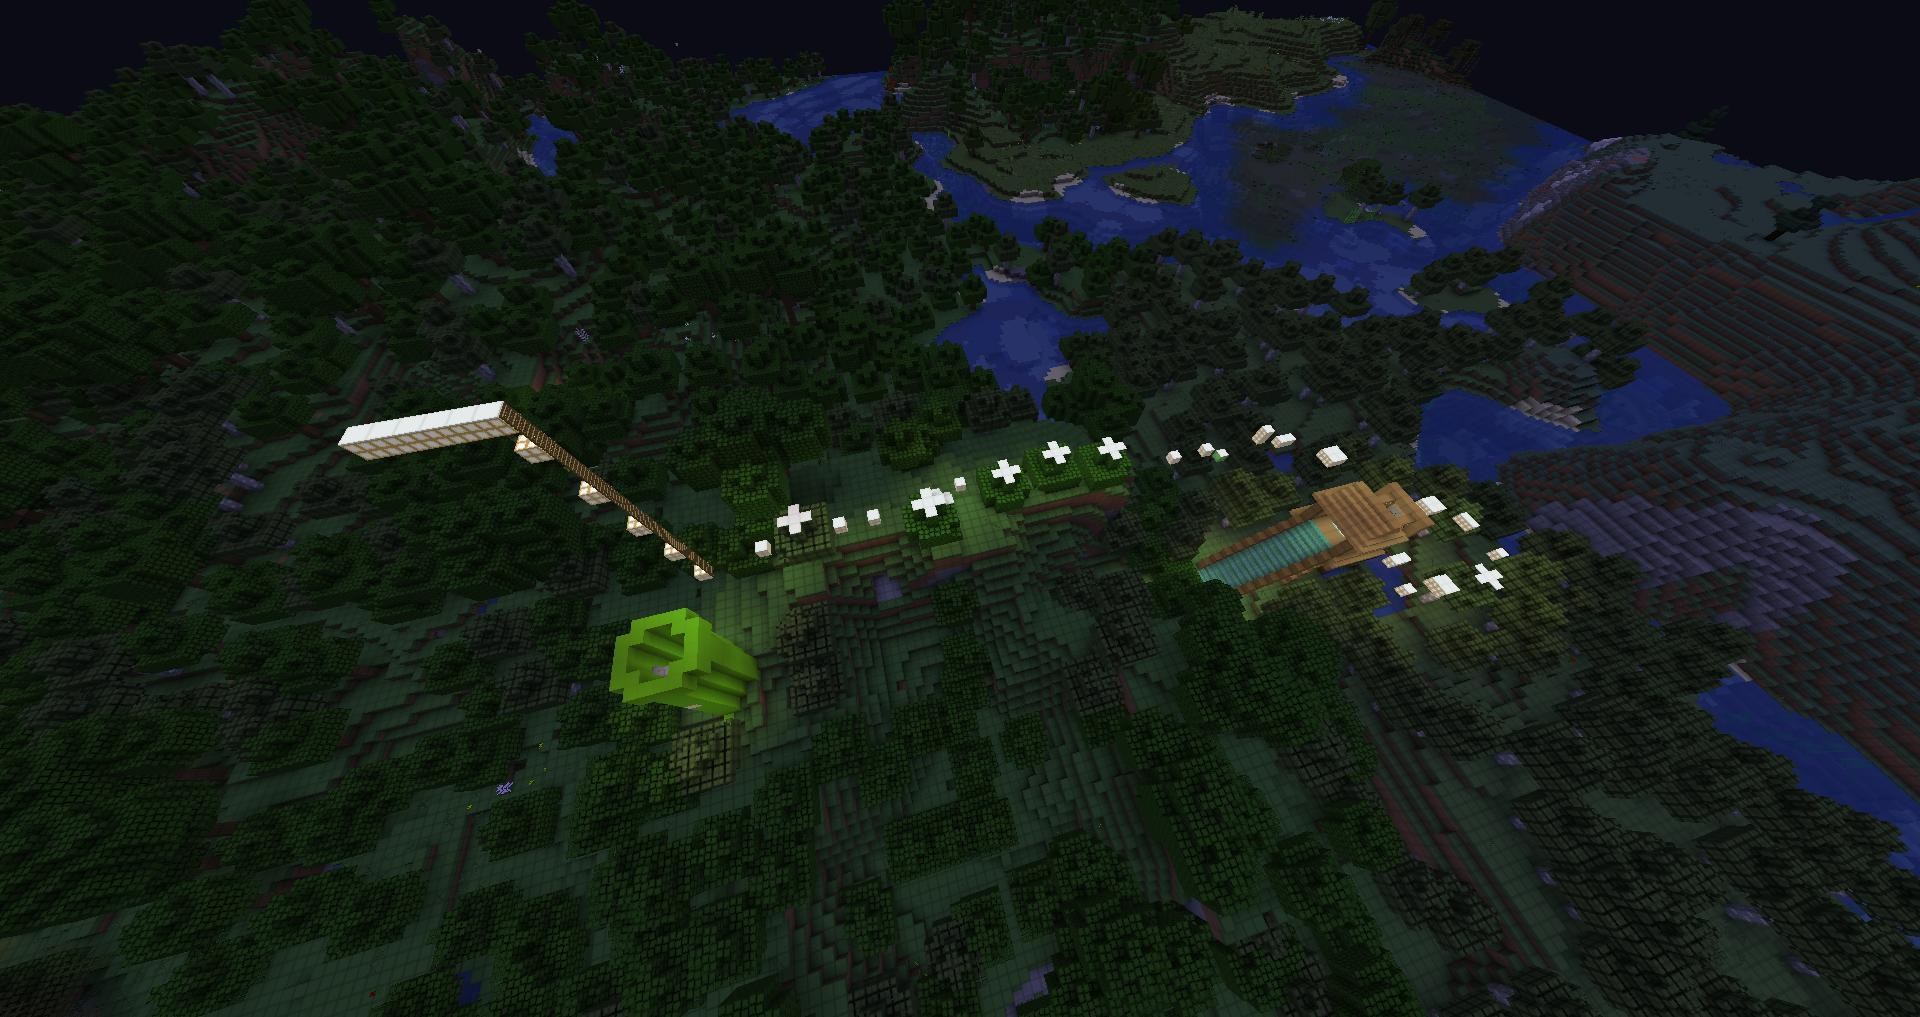 跑酷地圖 1 15 2 Minecraft 我的世界 當個創世神 哈啦板 巴哈姆特